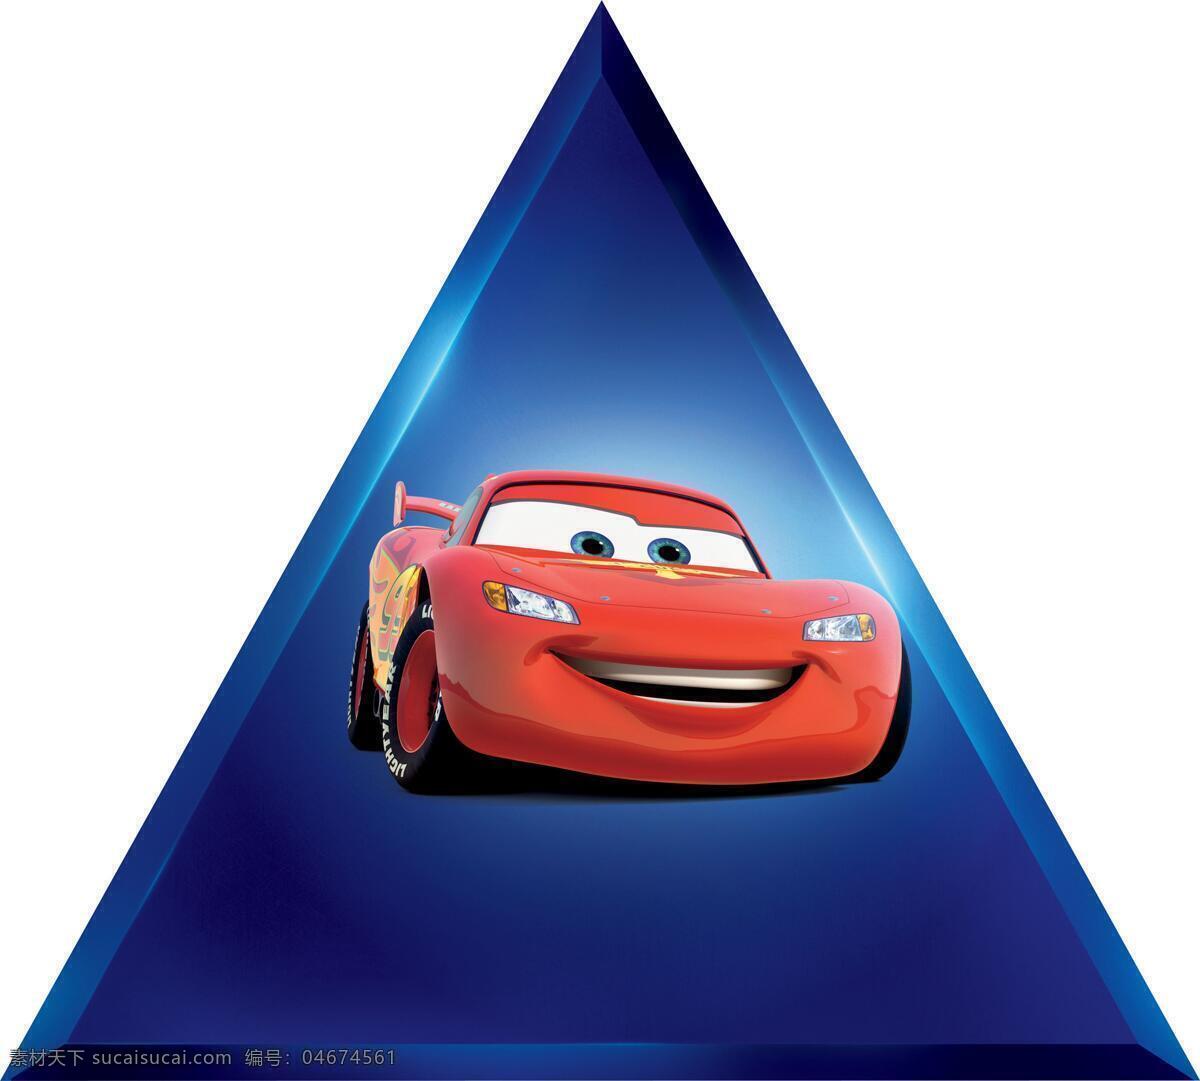 汽车总动员2 汽车总动员 动漫 动画 卡通 角色 可爱 3d 三维 电影 海报 宣传 跑车 小车 红色 轿车 赛车 比赛 高清